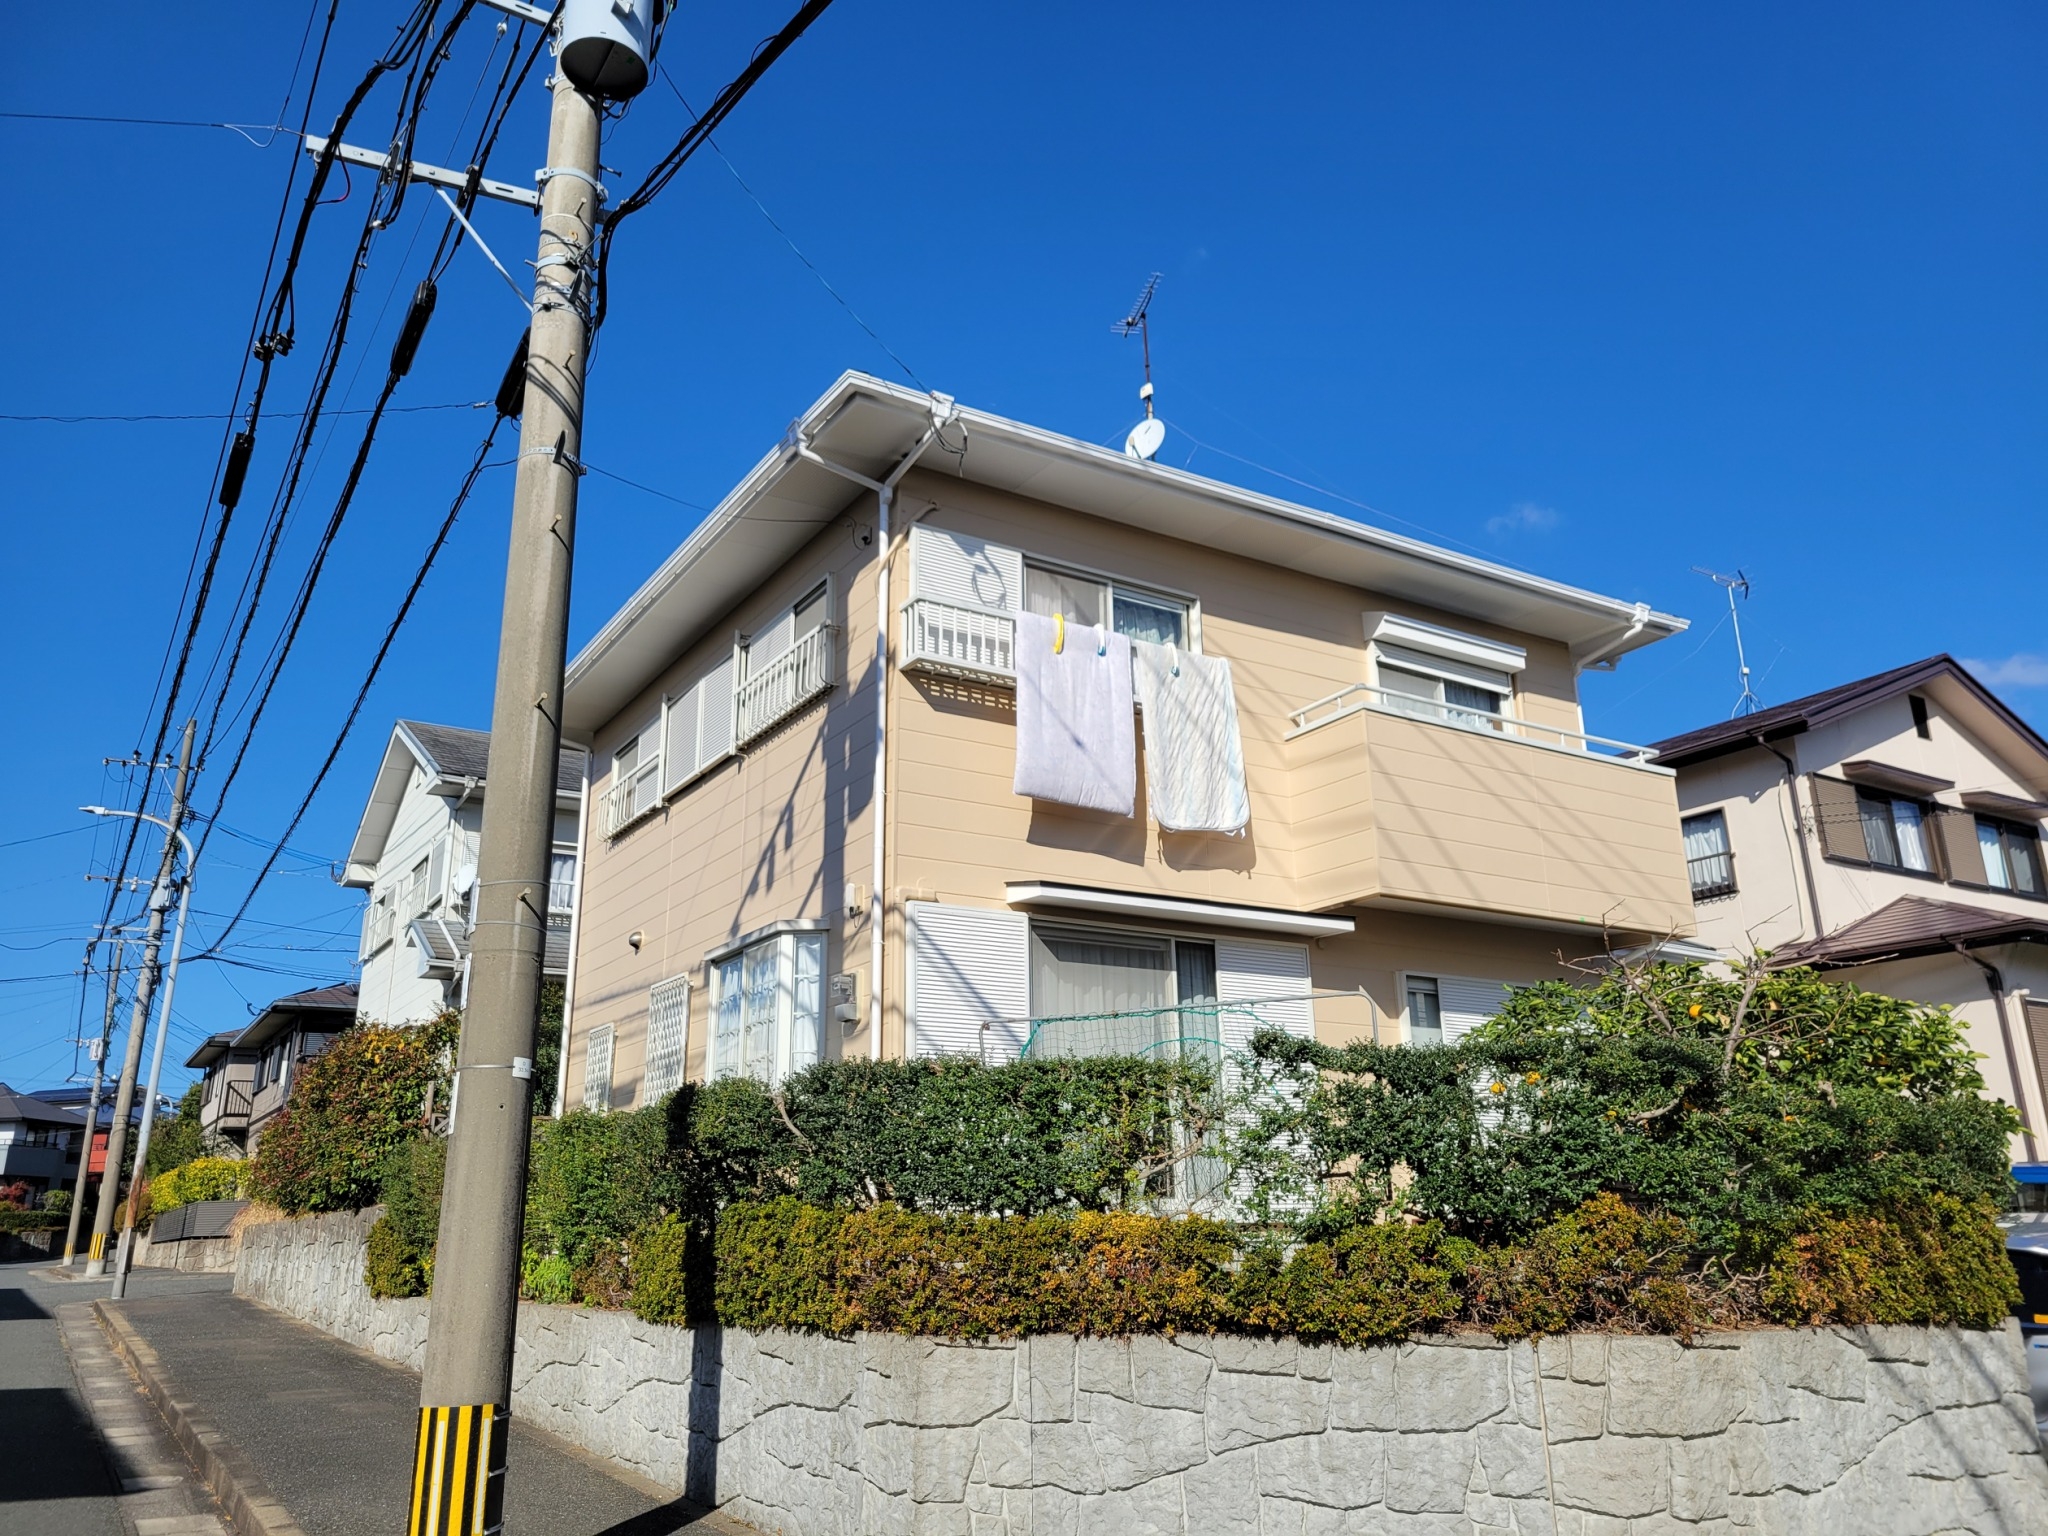 福岡県福岡市東区青葉のO様邸でチョーキングや汚れなどの付着が起きている外壁や屋根を塗装して大満足の工事になるよう全力で施工いたしました。12/7完成です。【HPより】